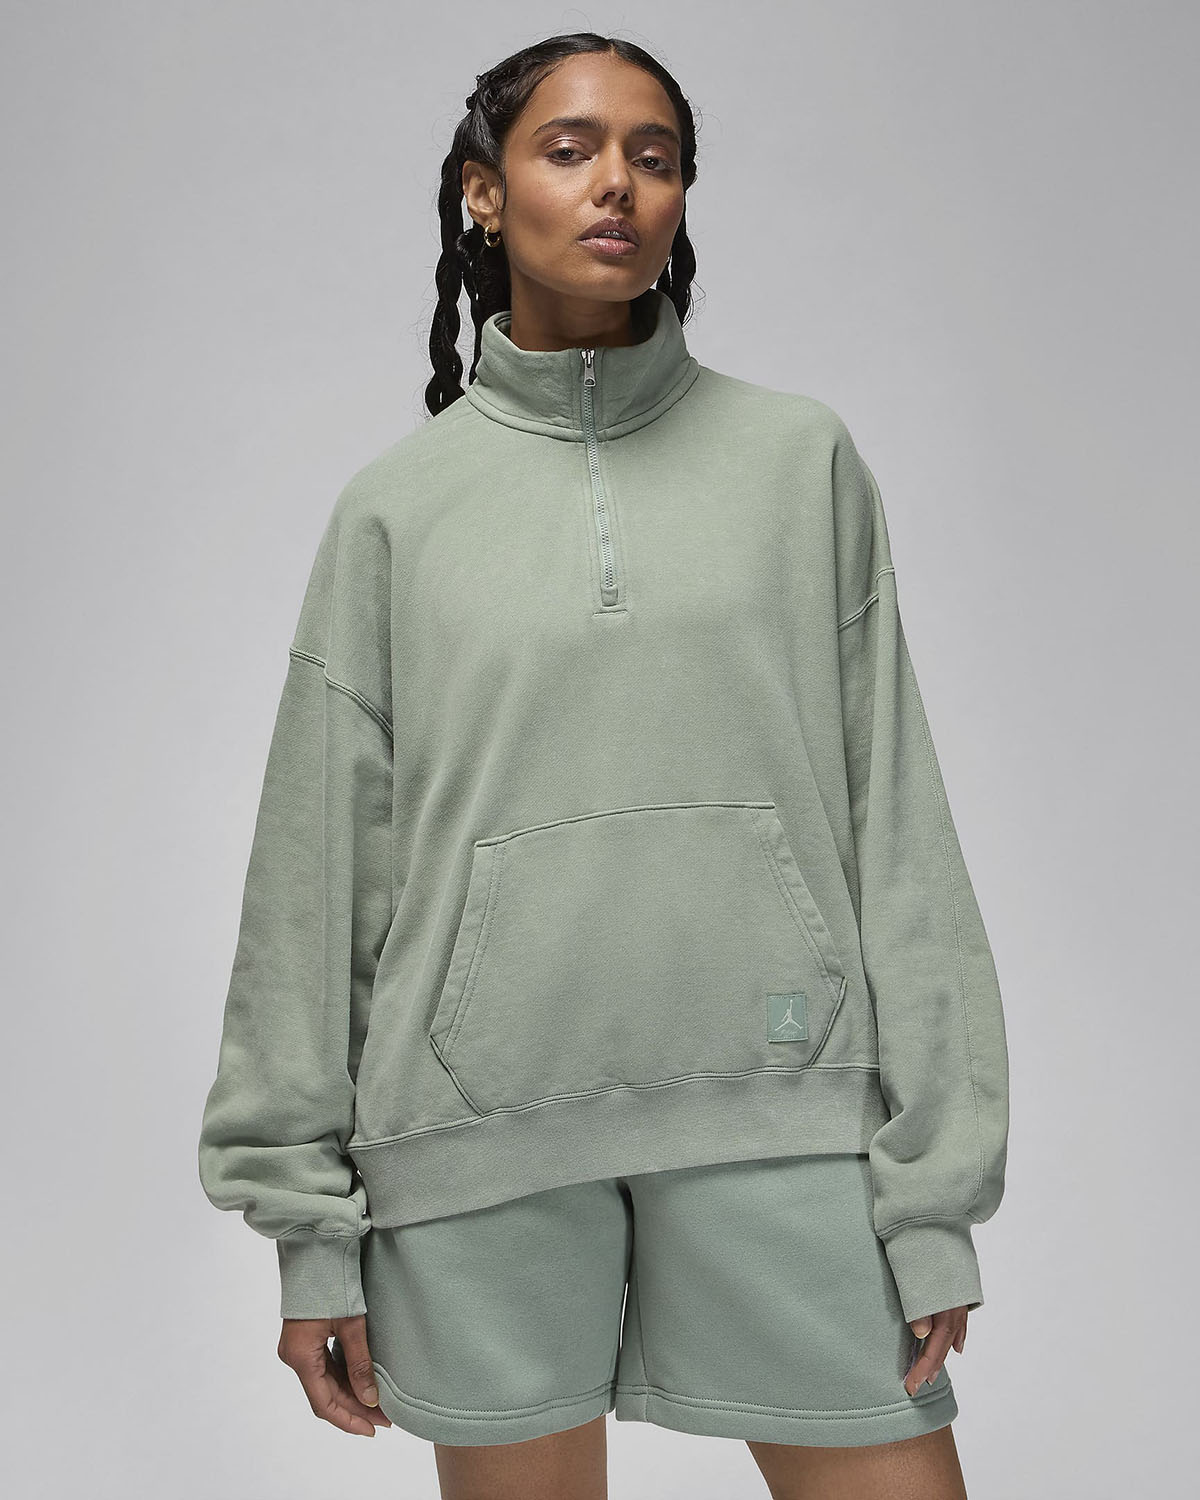 Jordan Flight Fleece Womens Zip Sweatshirt Jade Smoke